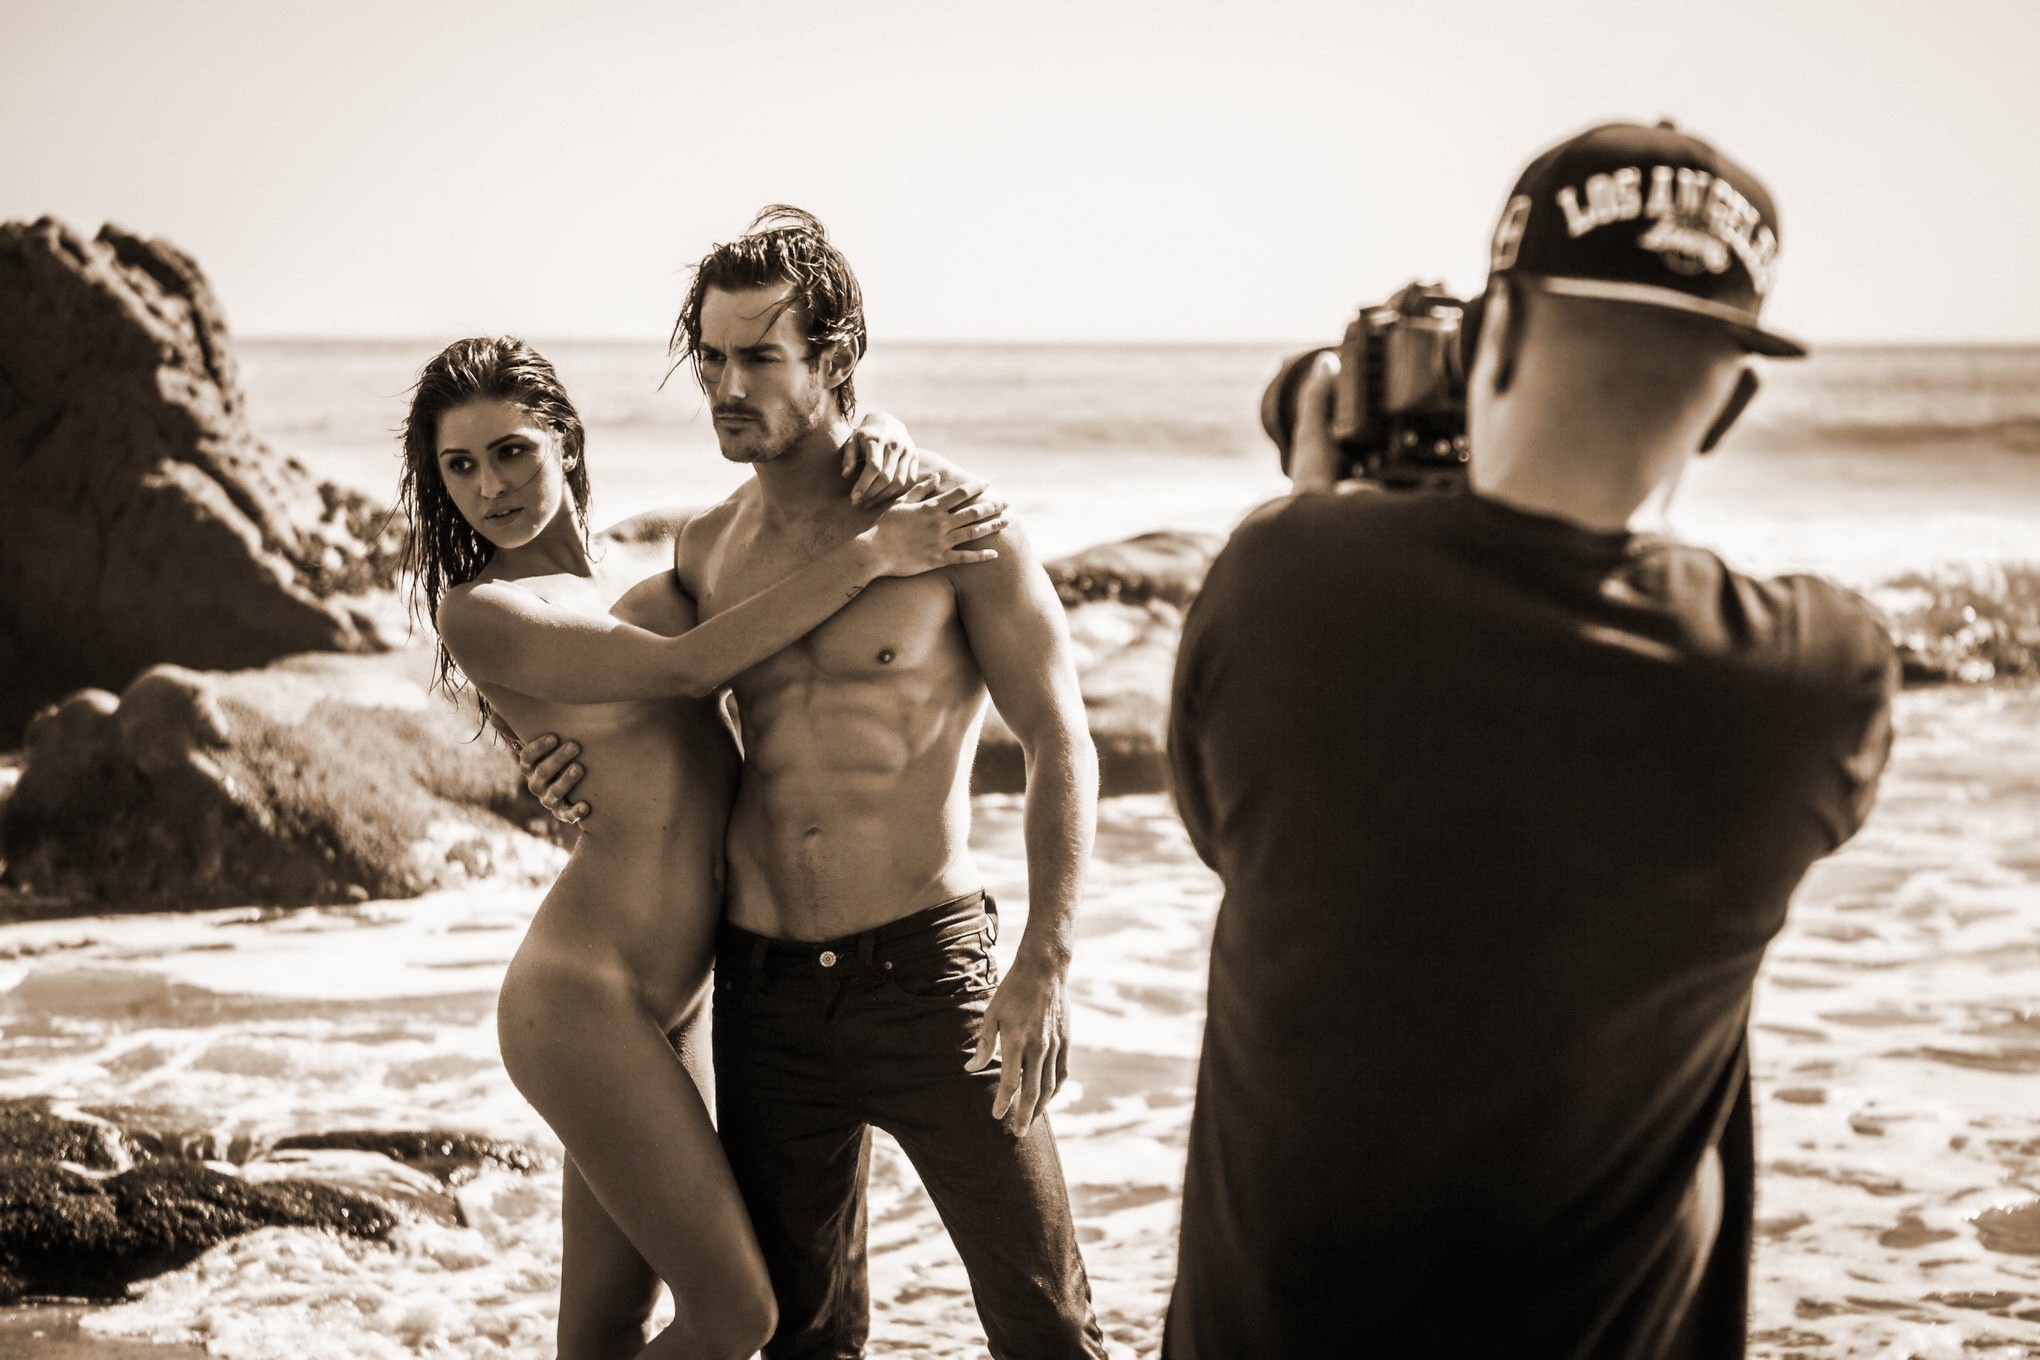 Jehane gigi paris totalmente desnuda acariciando en la playa photoshoot por steve shaw
 #75181121